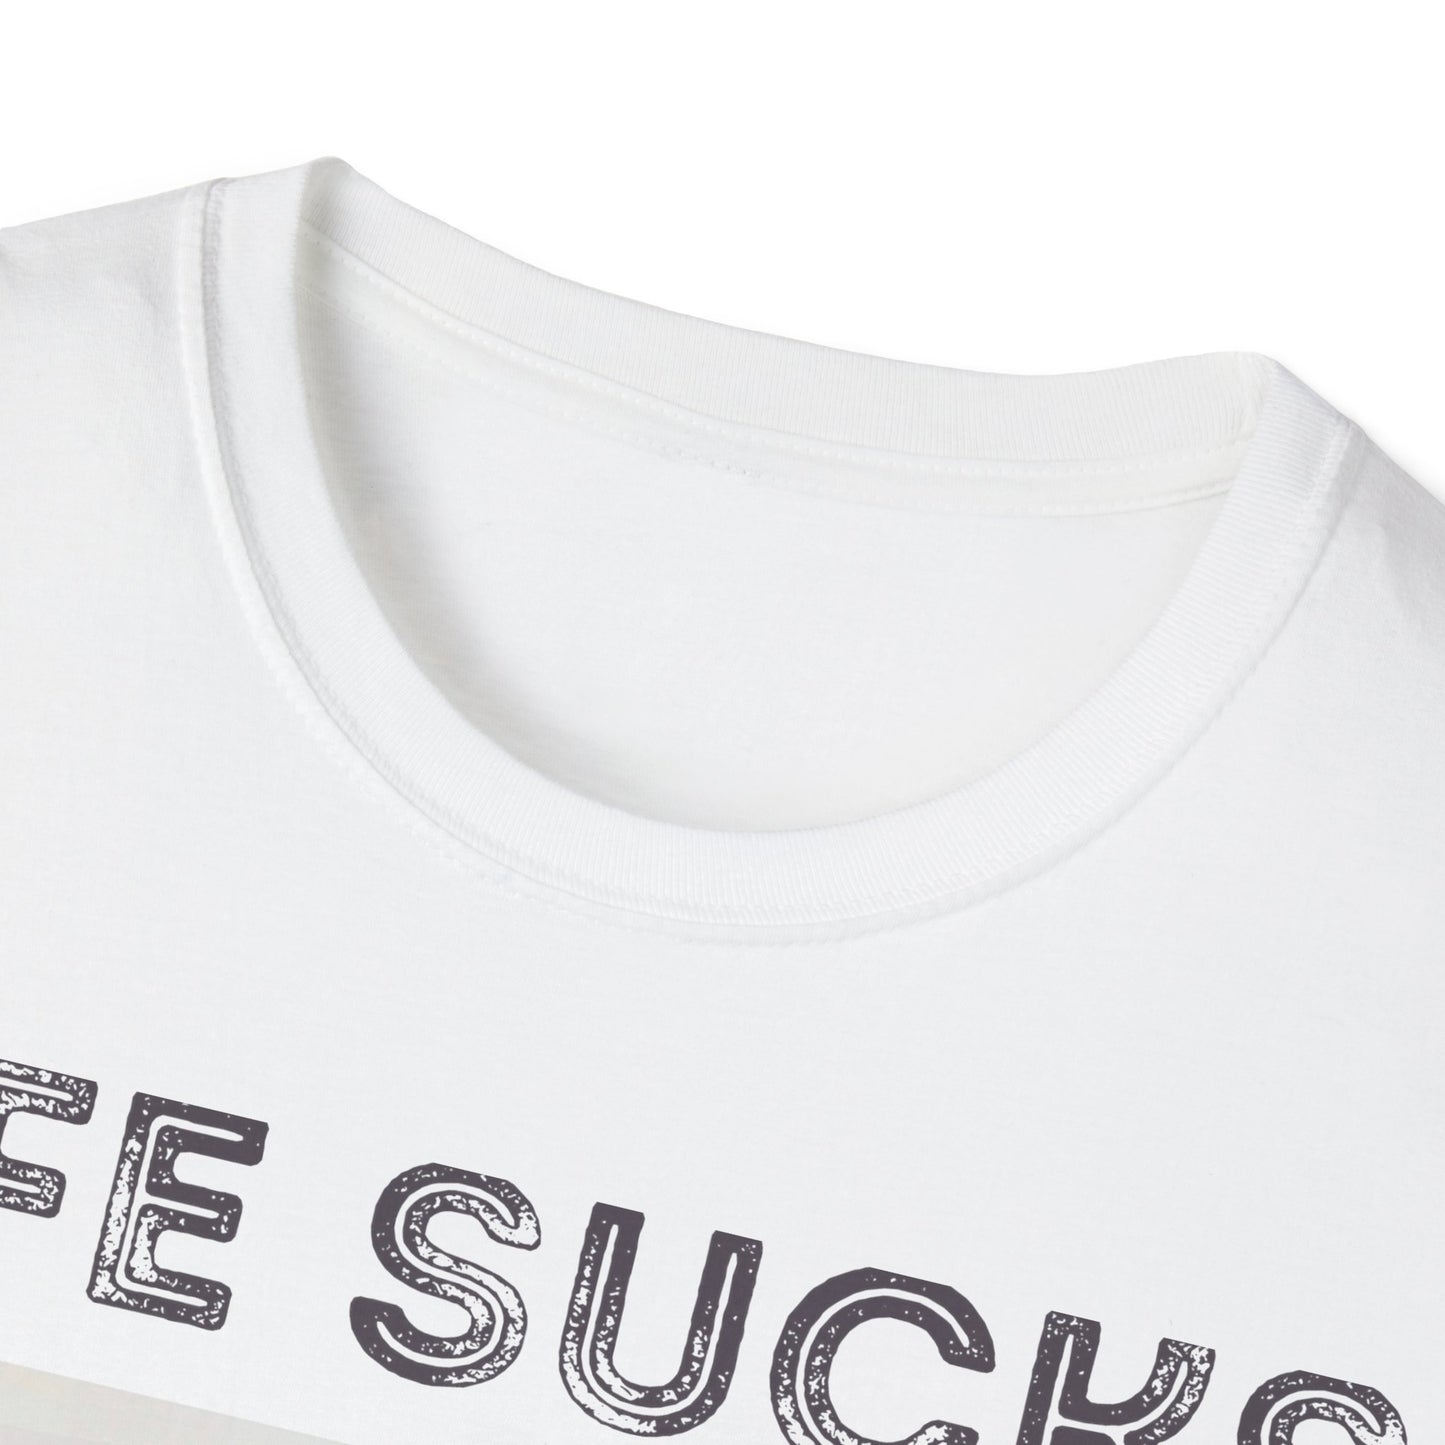 Nick Miller "Life sucks" t-shirt | New Girl fan gift